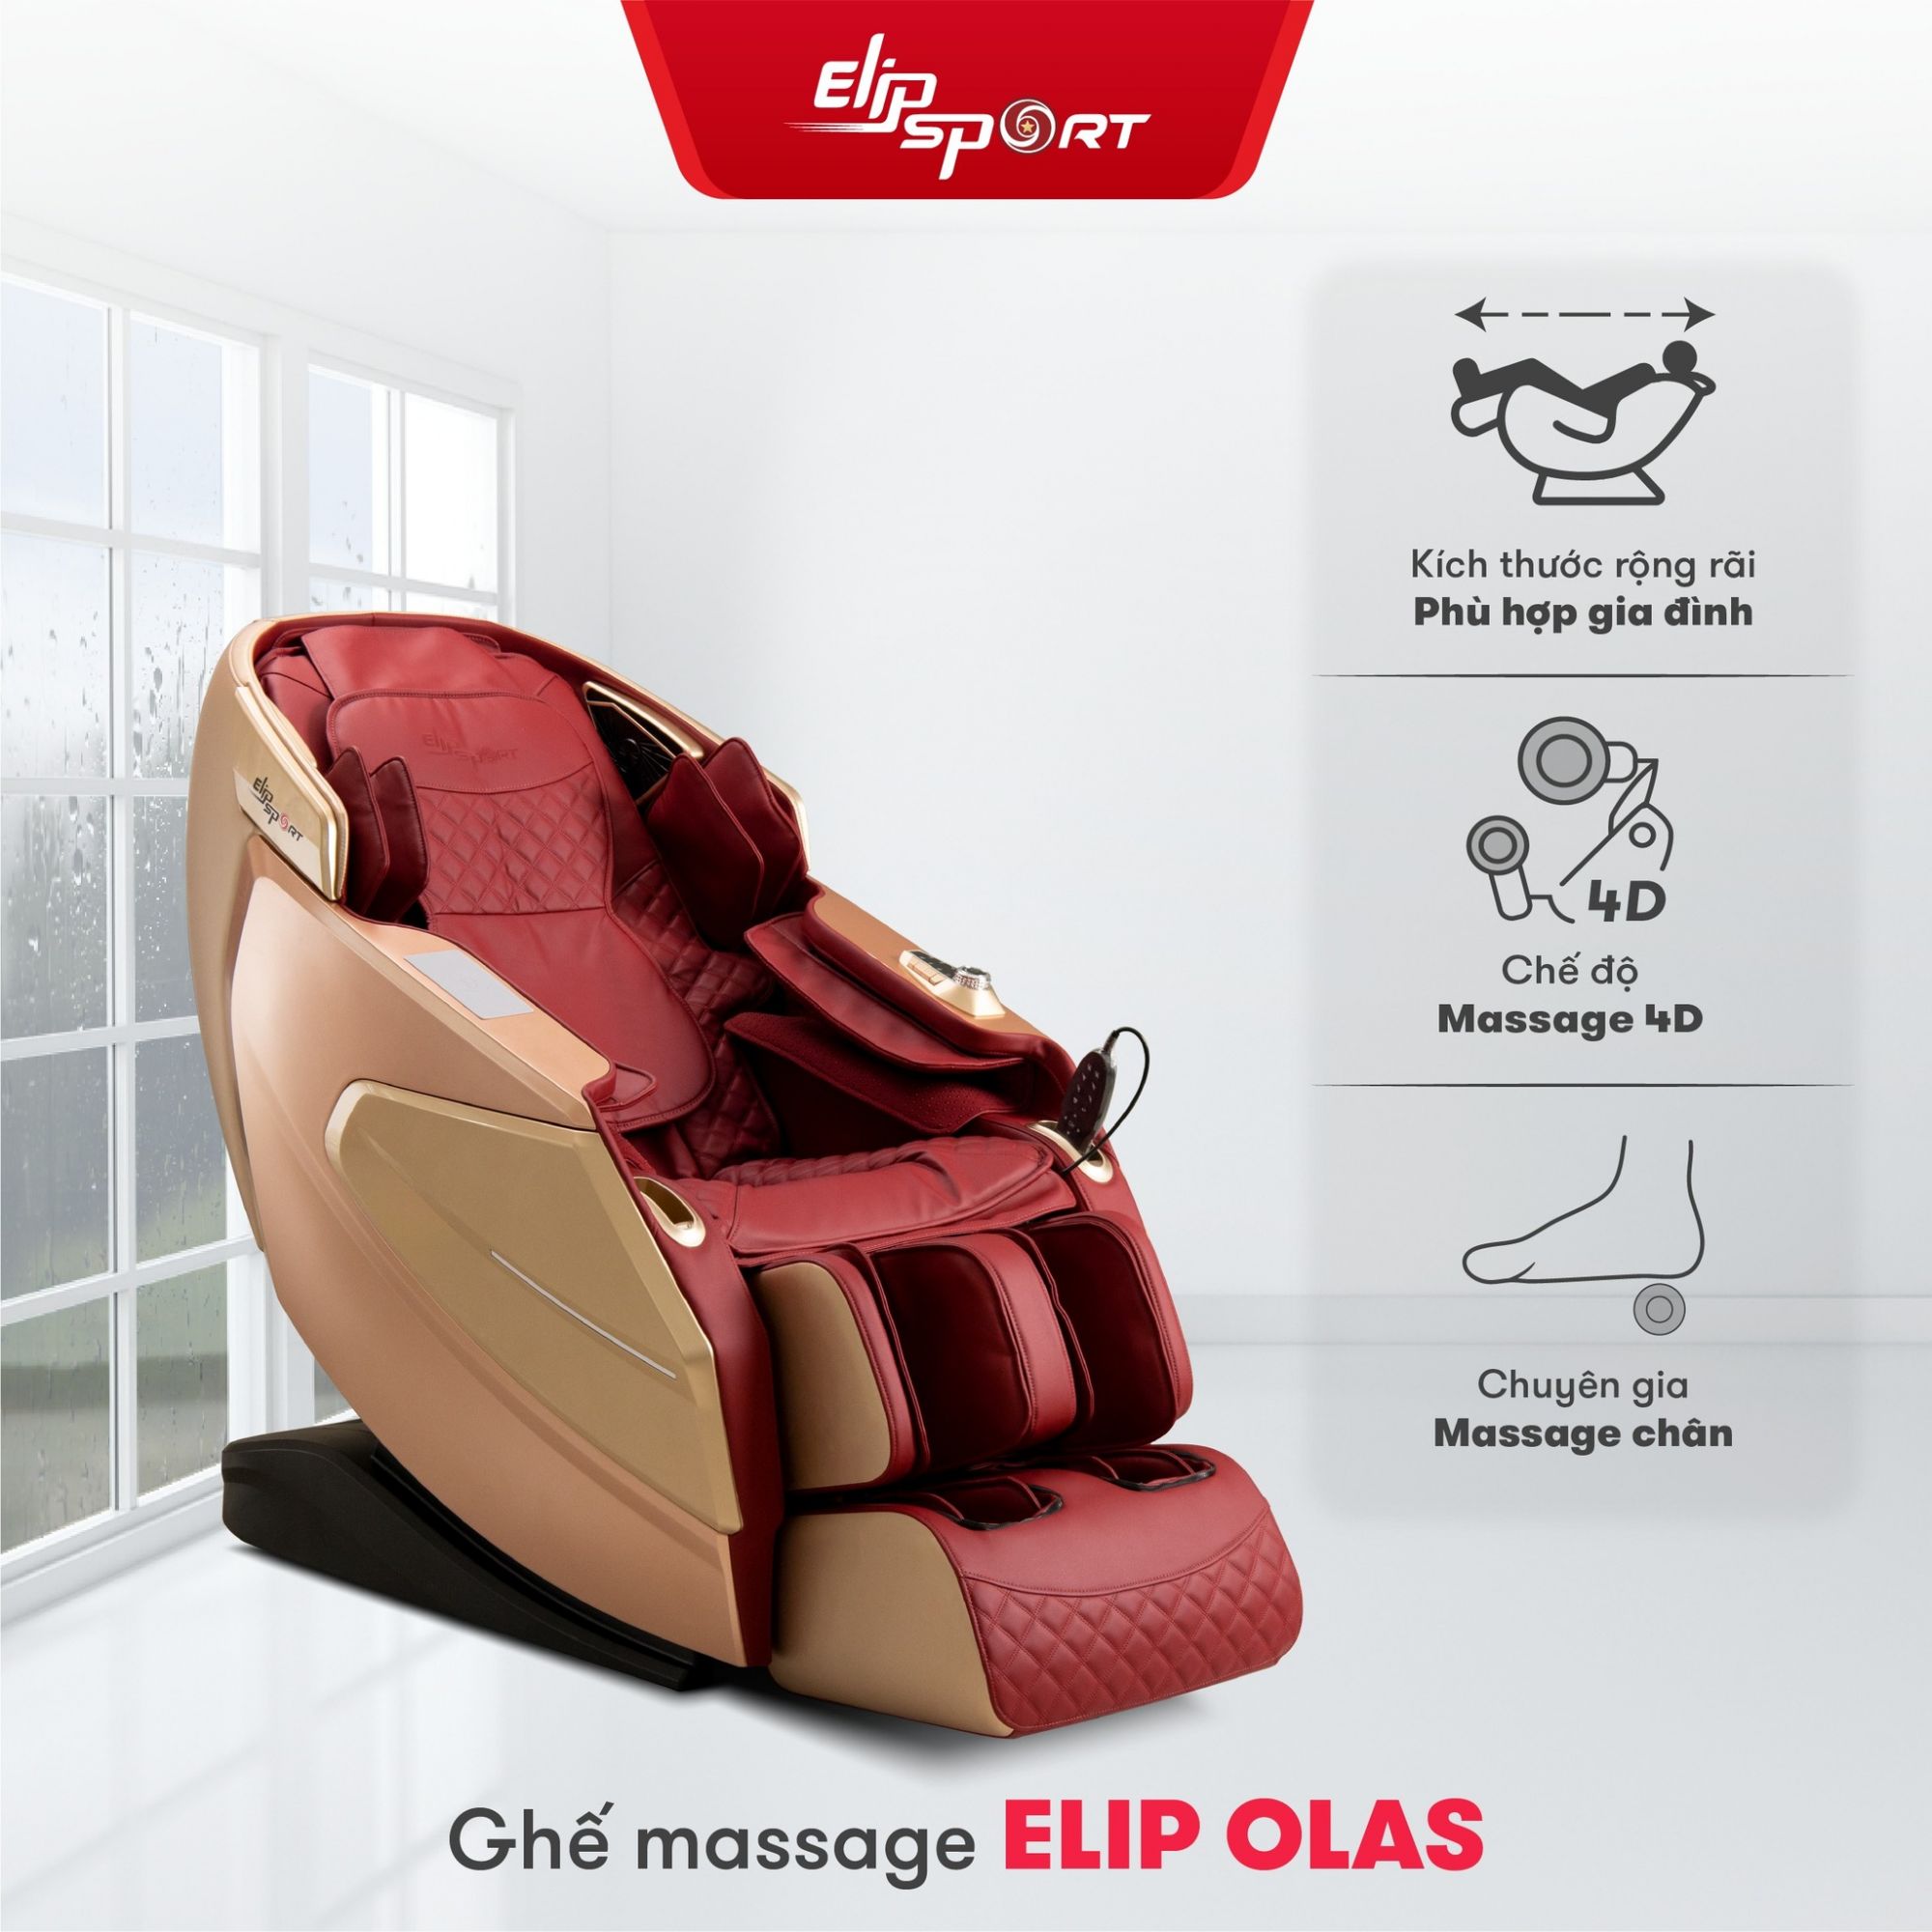 ghế massage tầm giá 50 triệu elip olas